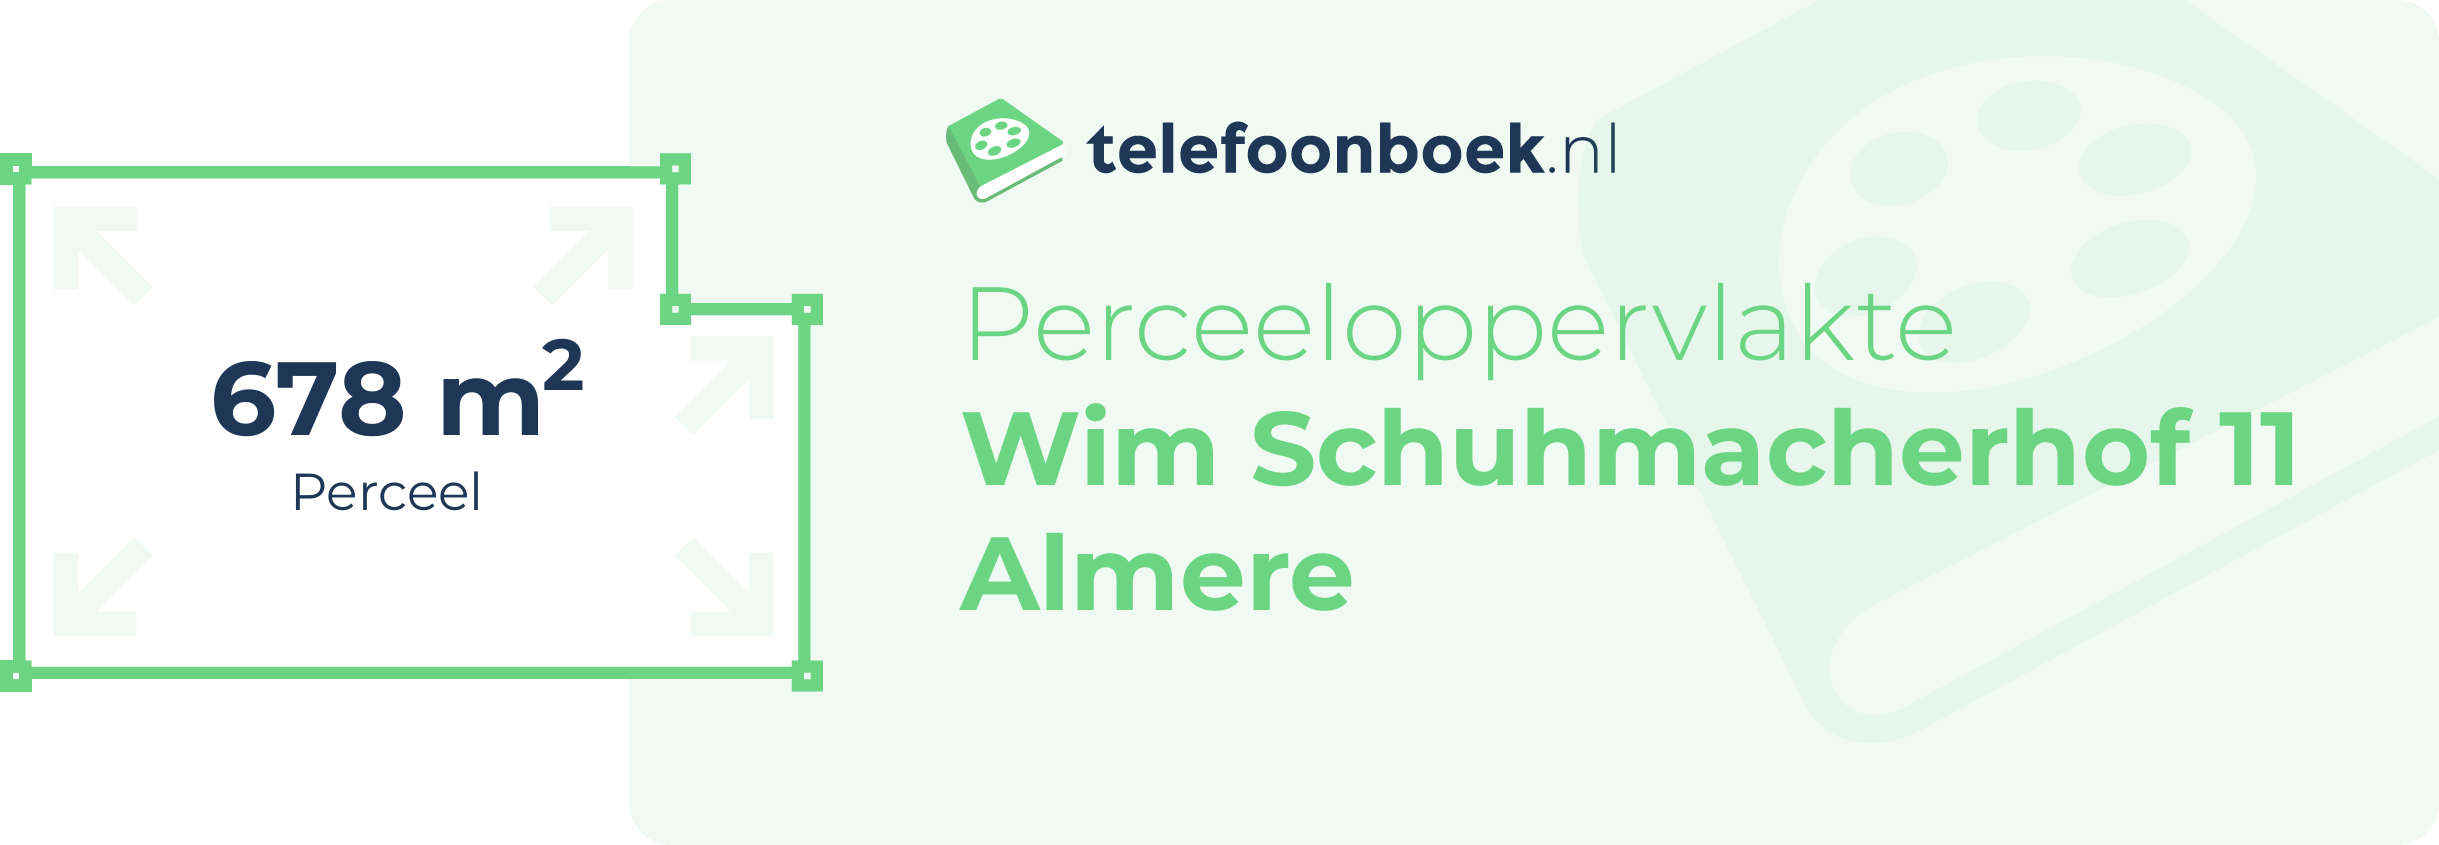 Perceeloppervlakte Wim Schuhmacherhof 11 Almere